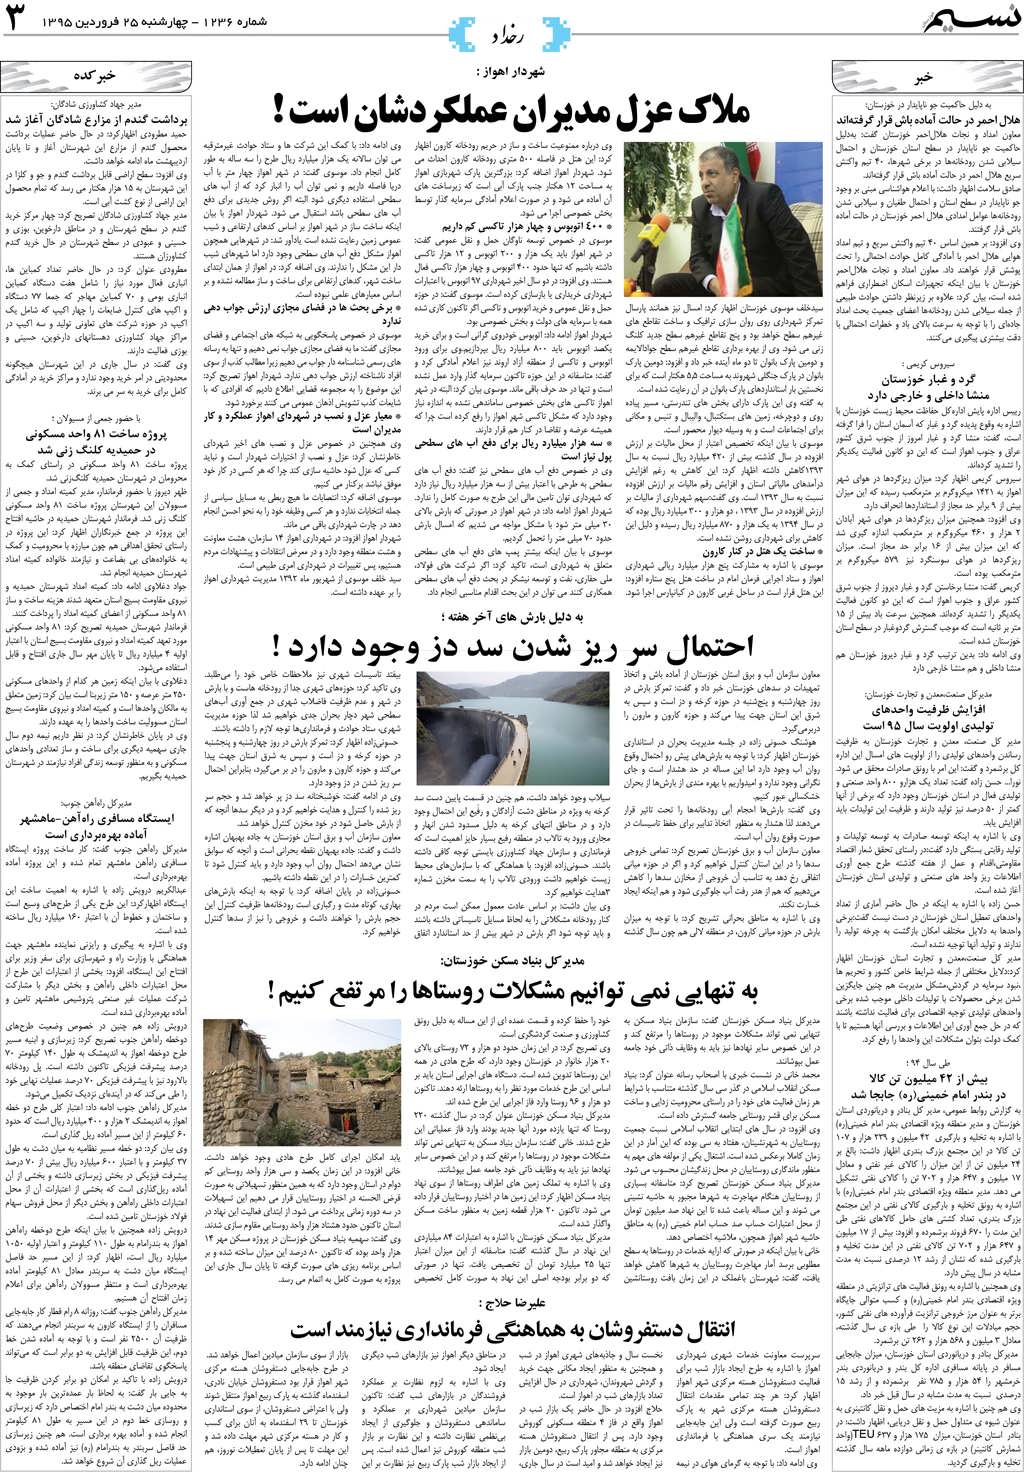 صفحه رخداد روزنامه نسیم شماره 1236